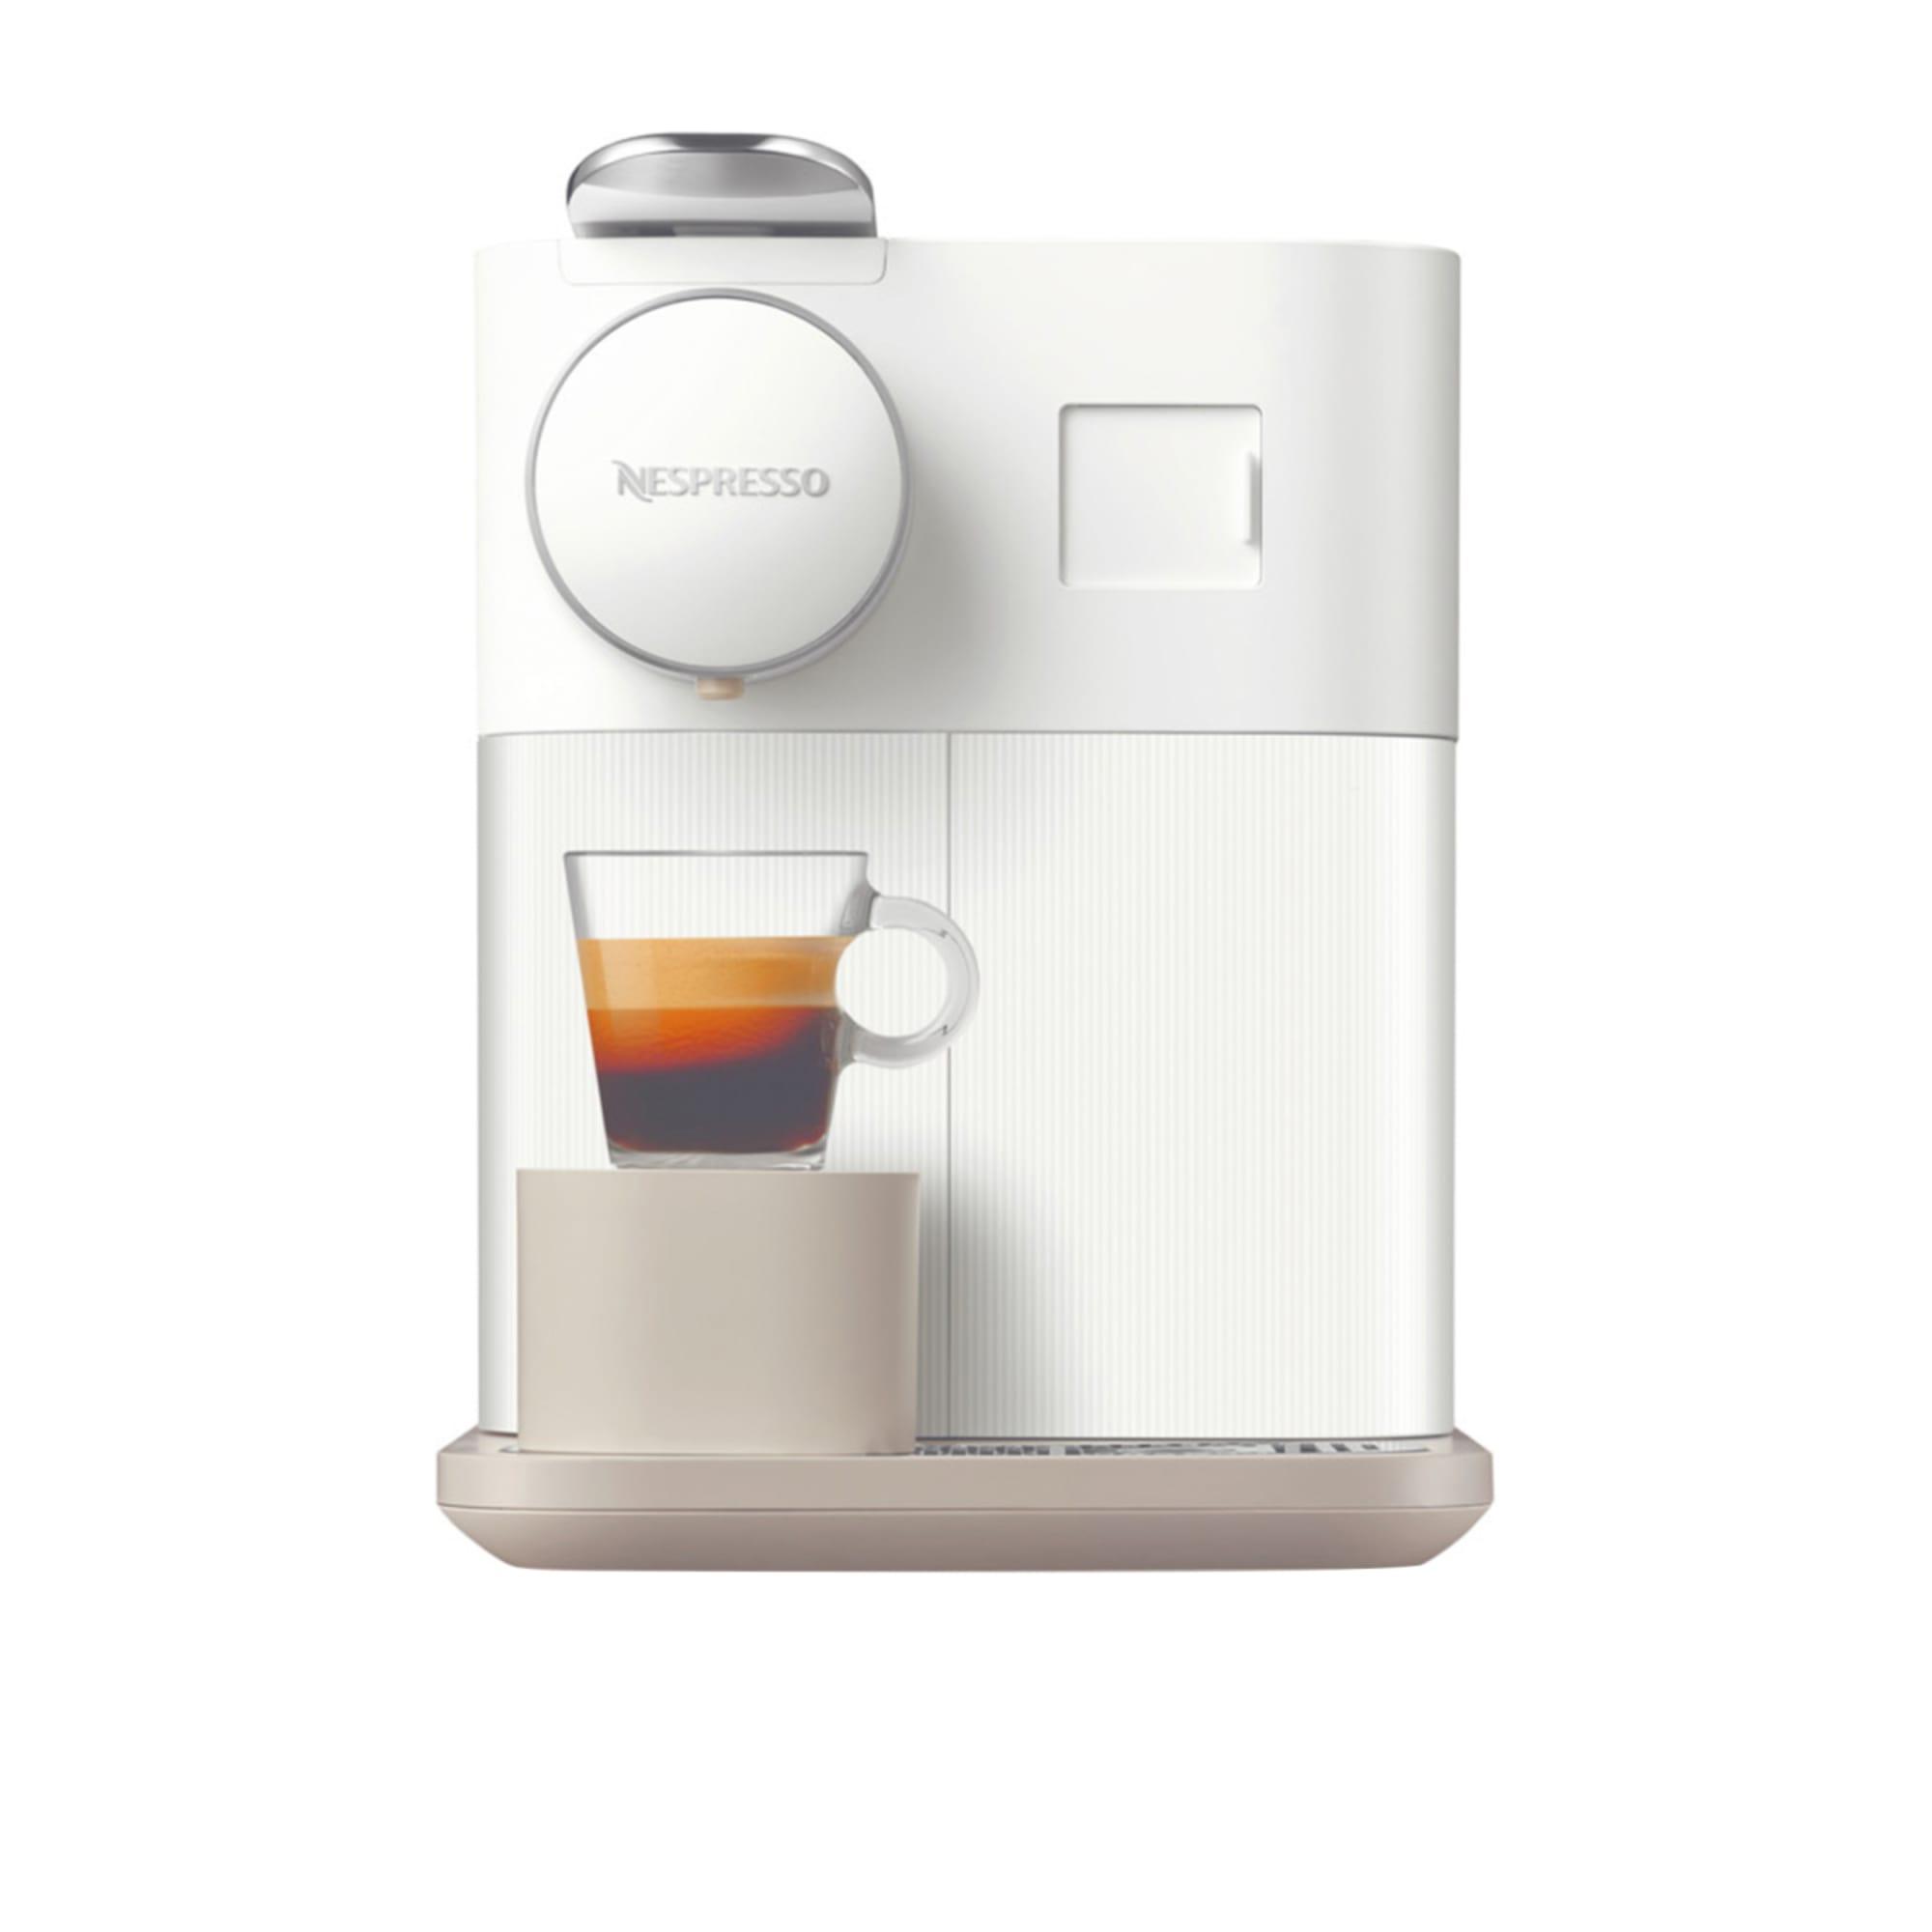 DeLonghi Nespresso Gran Lattisima EN650W Automatic Capsule Coffee Machine White Image 4